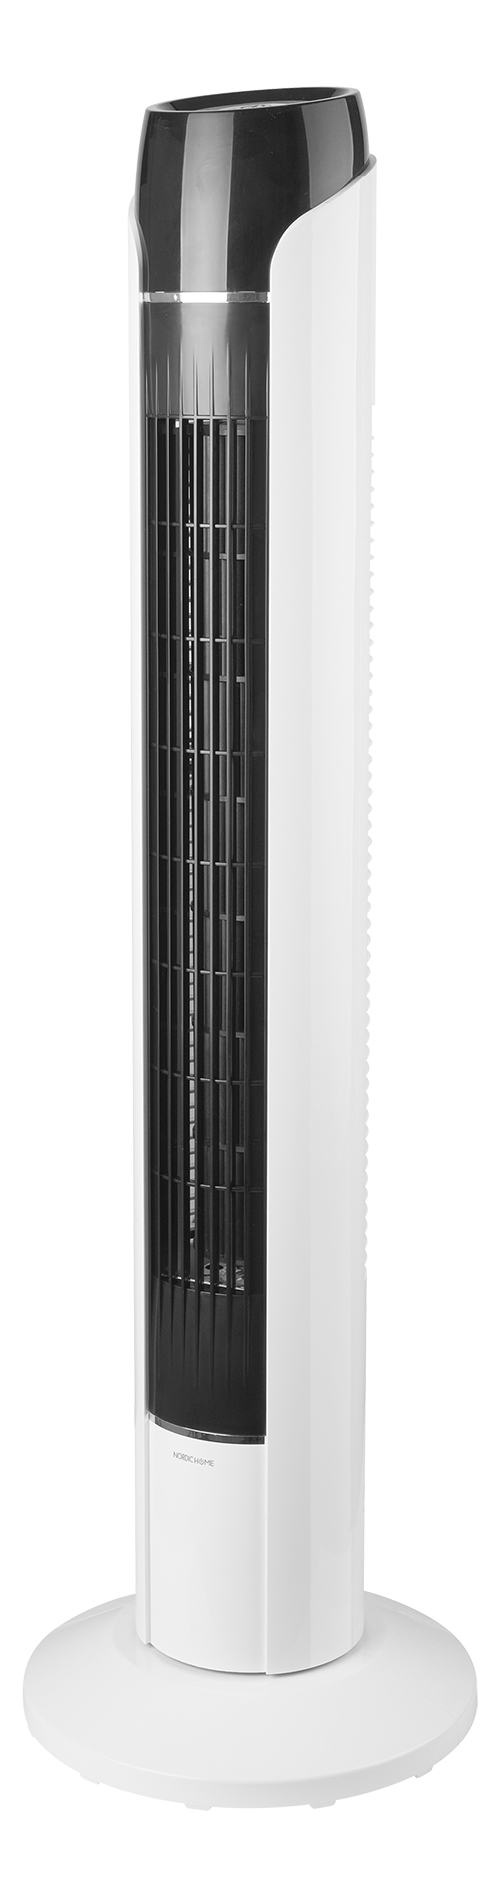 Вентилятор Nordic Home Tower с низким уровнем шума, колебательный, с функцией таймера